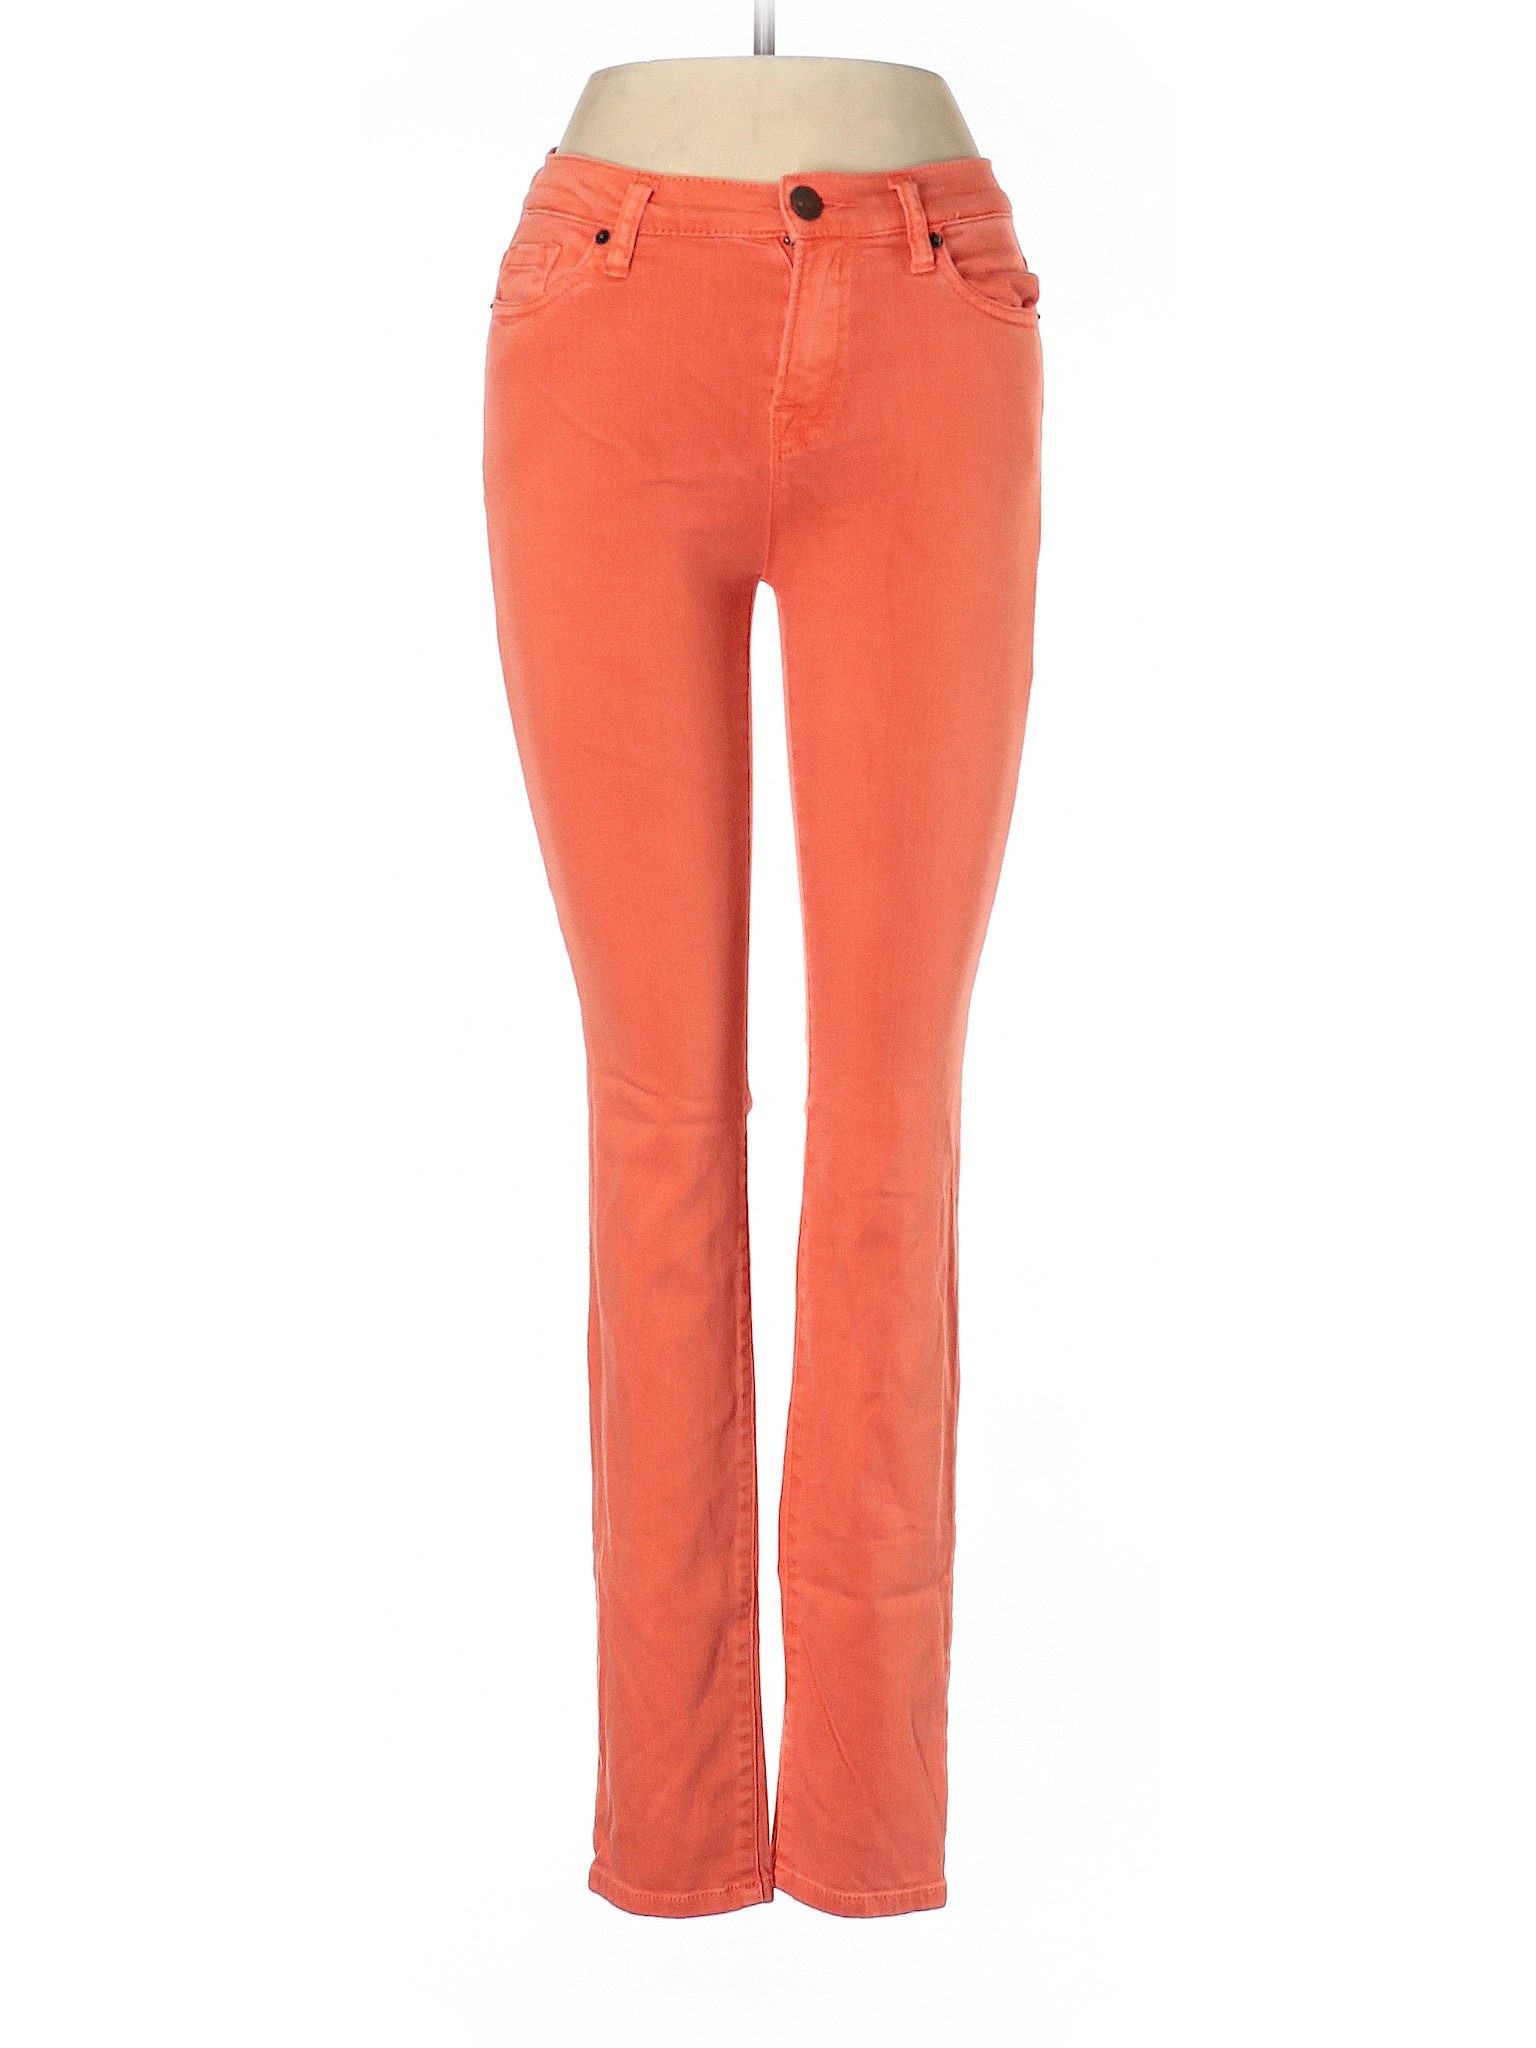 BDG Women Orange Jeans 26W | eBay